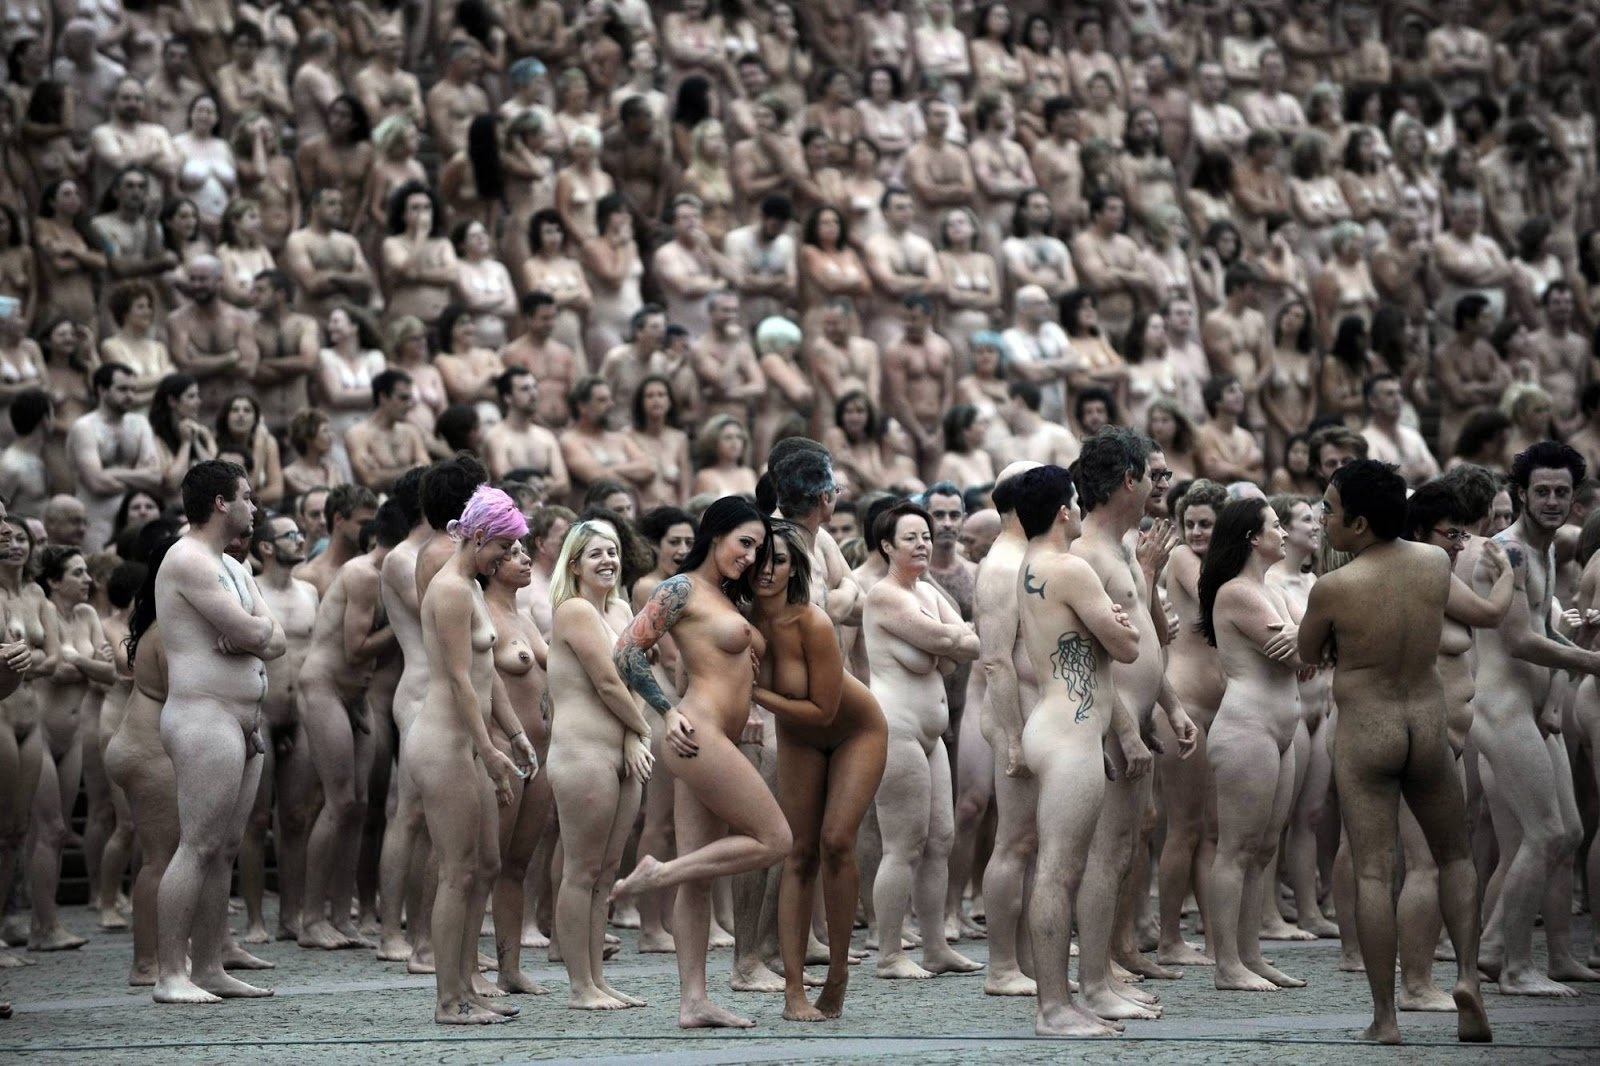 Голые девушки в туника танцуют стриптиз. Смотреть голые девушки в туника танцуют стриптиз онлайн